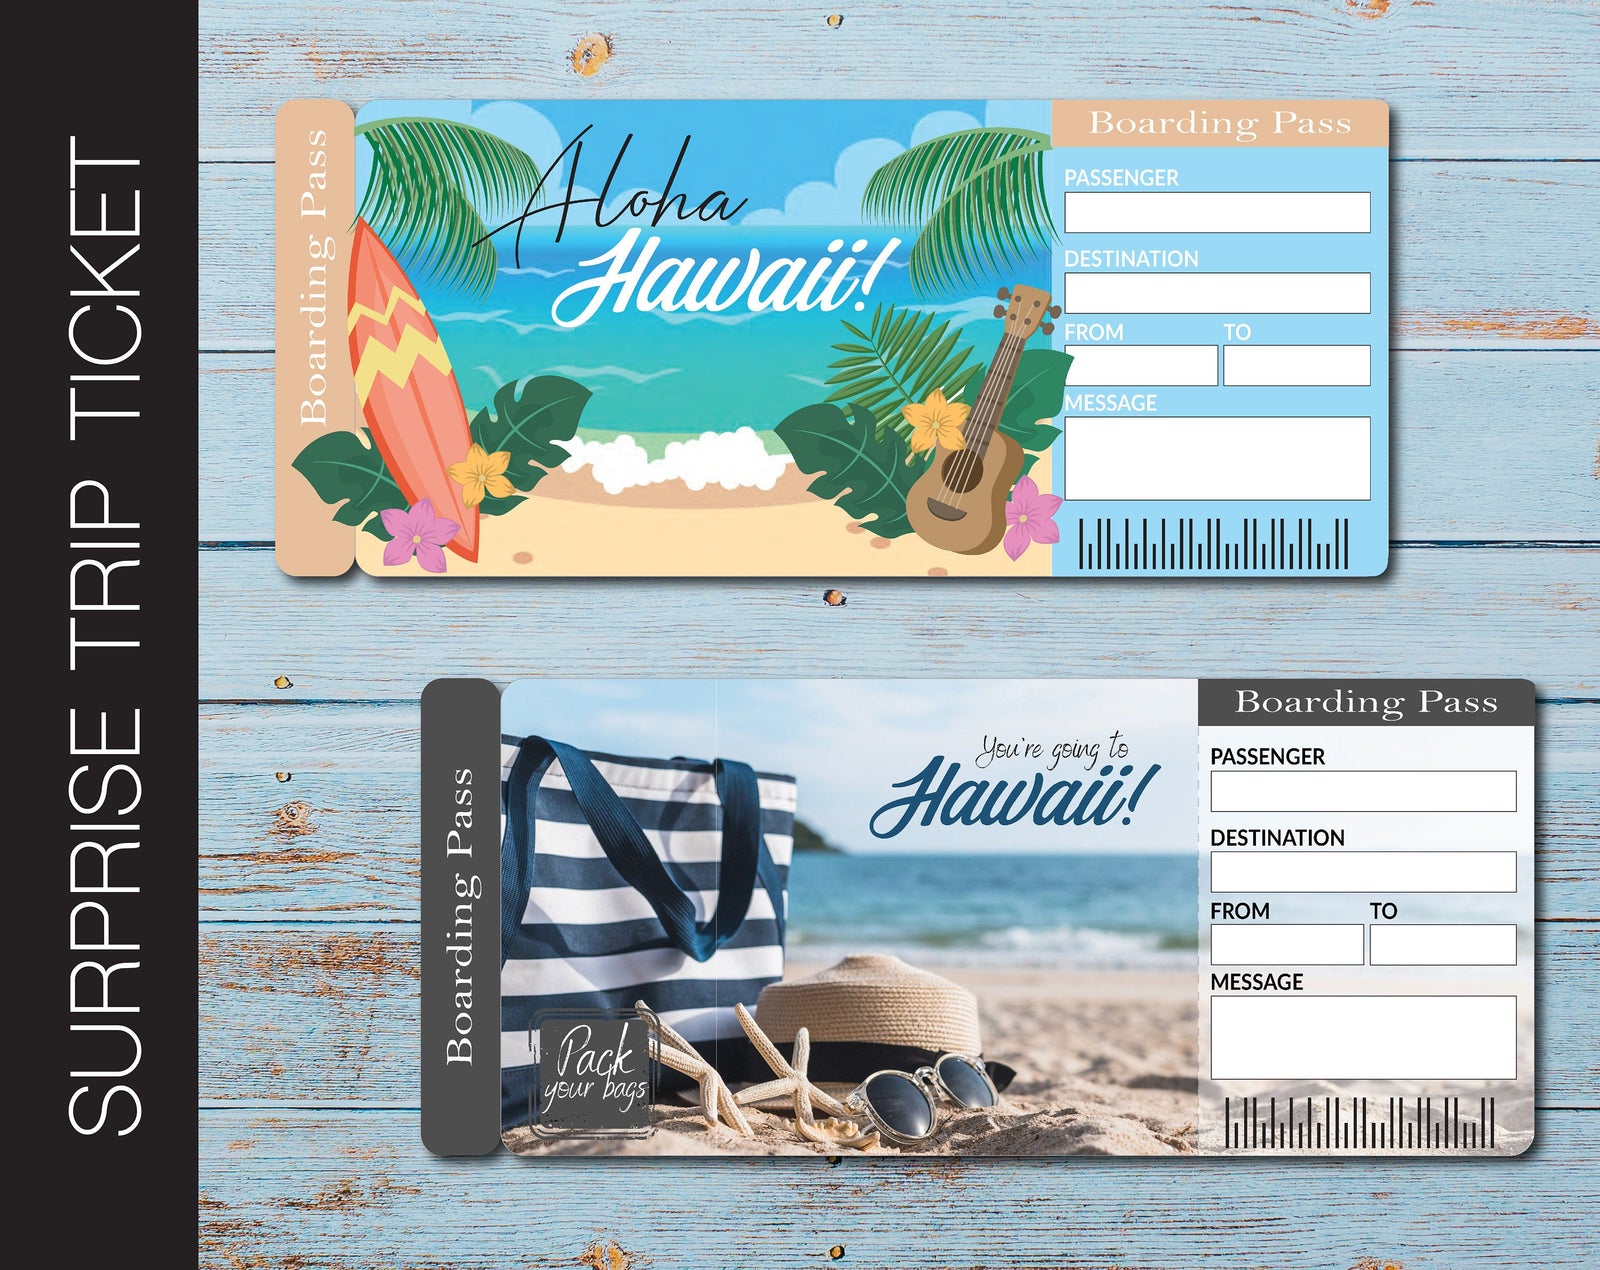 round trip ticket to hawaii